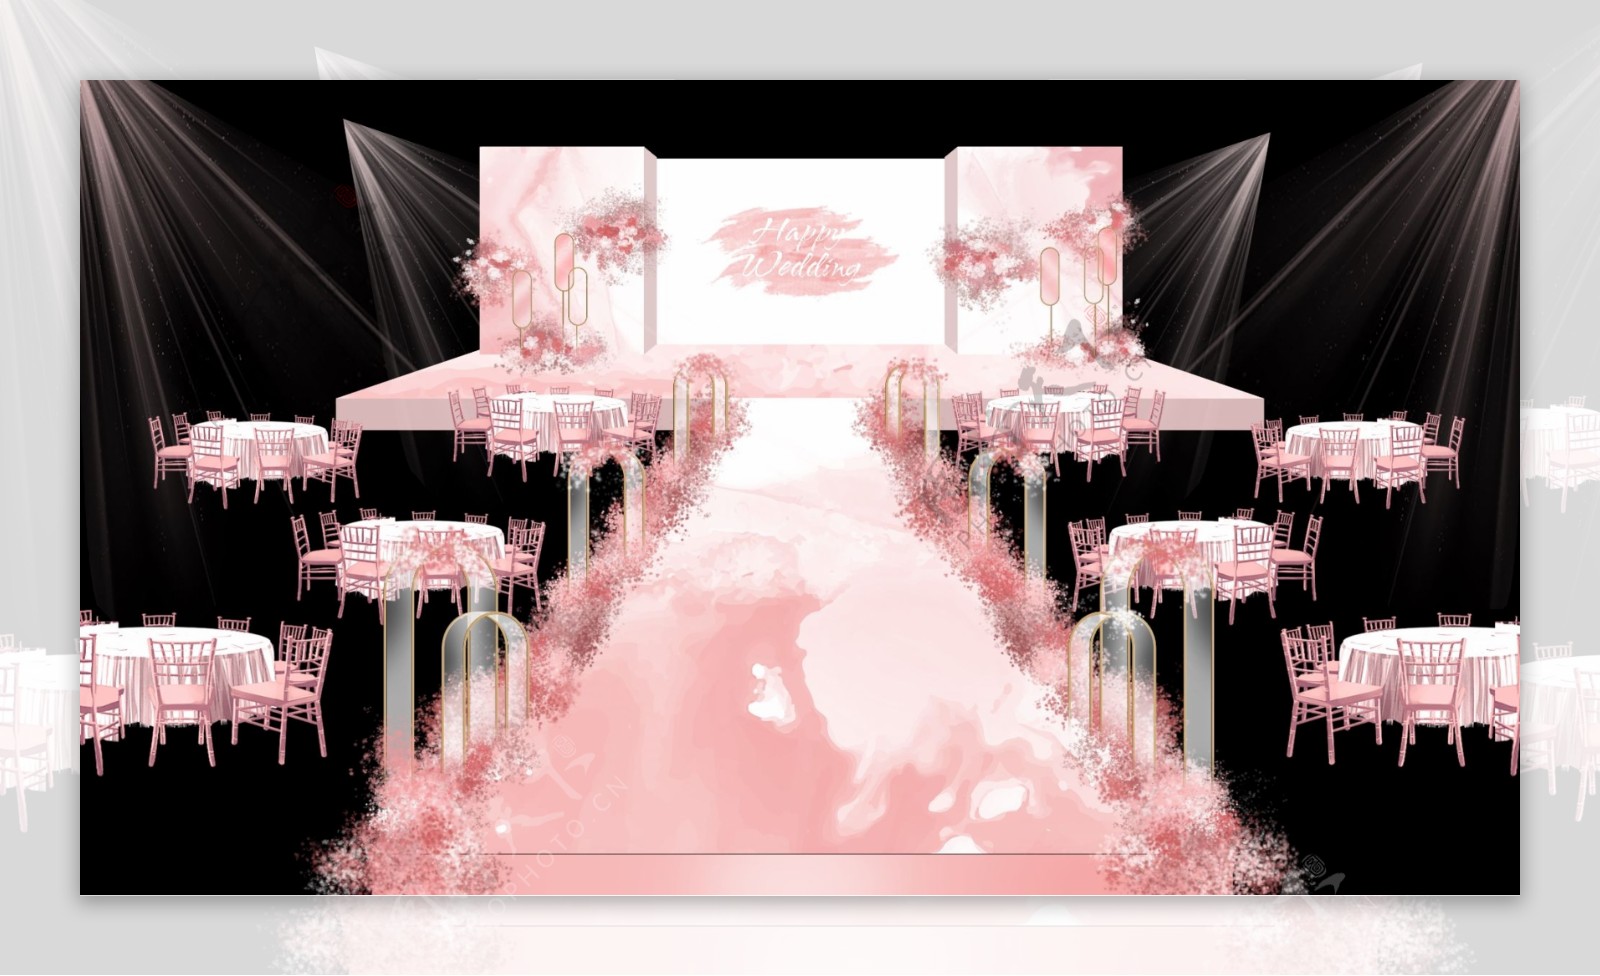 粉色婚礼舞台效果图